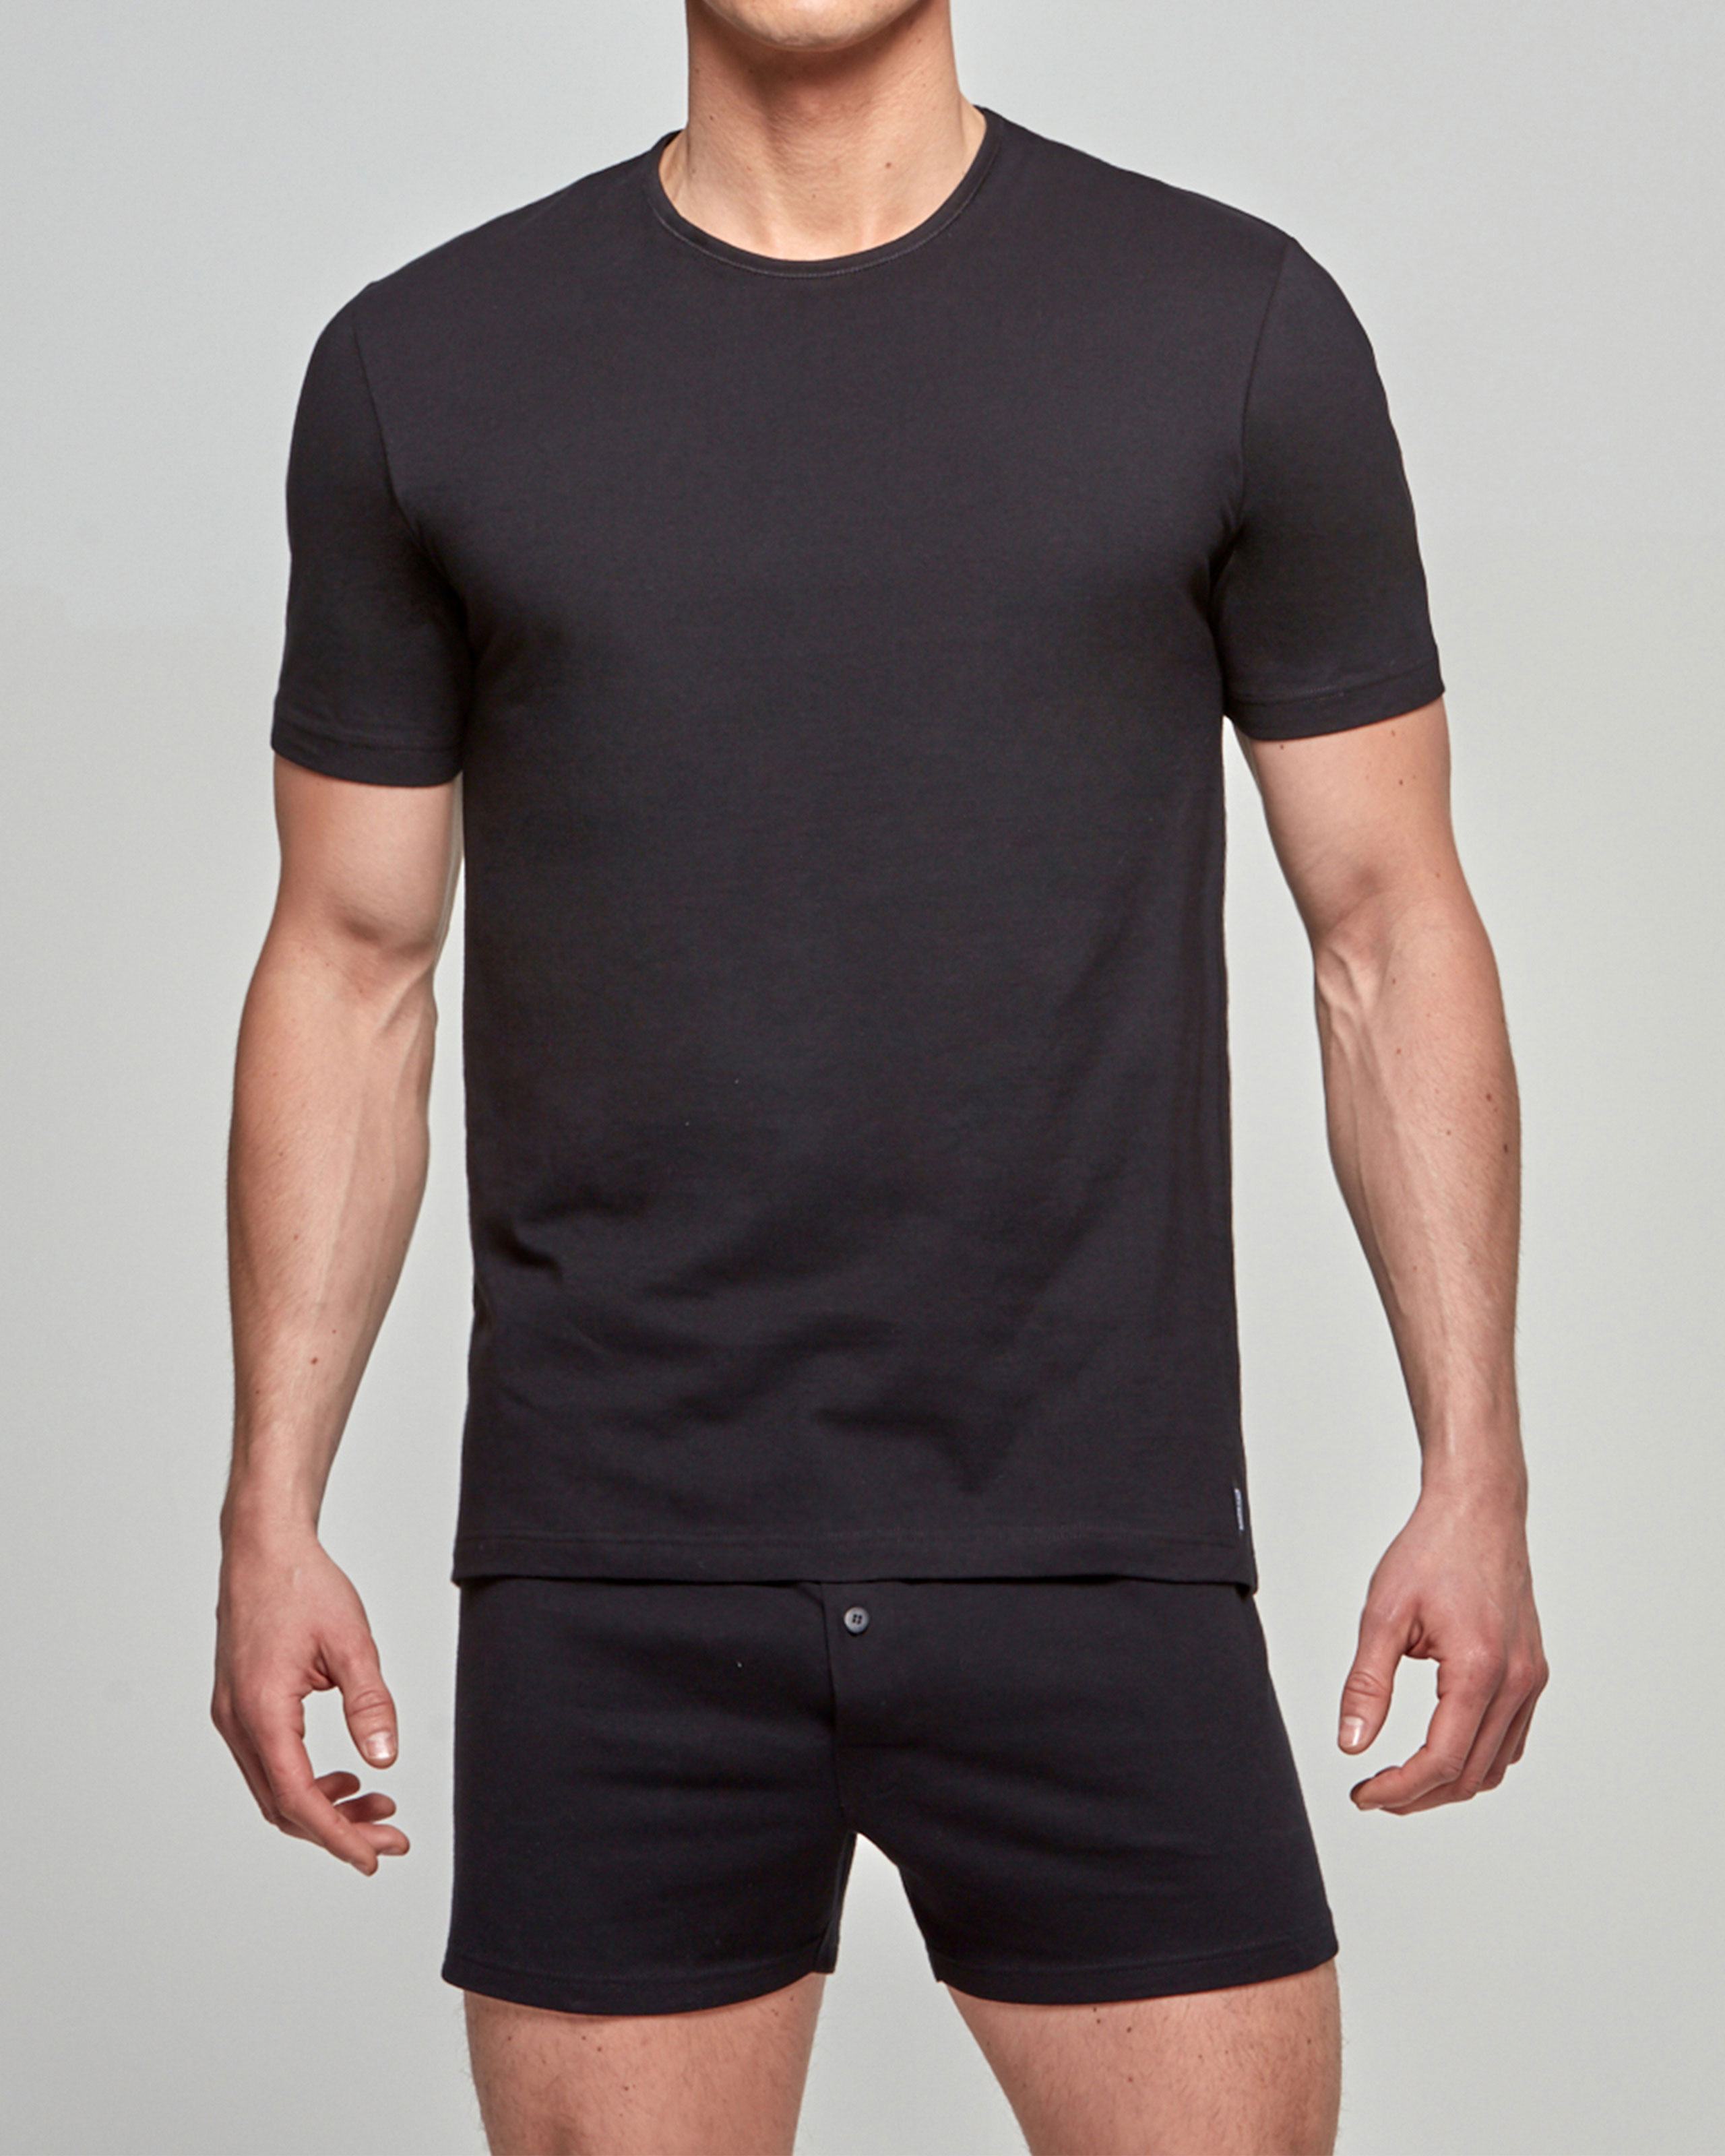 IMPETUS T-shirt de hombre Pure Cotton NEGRO (S)